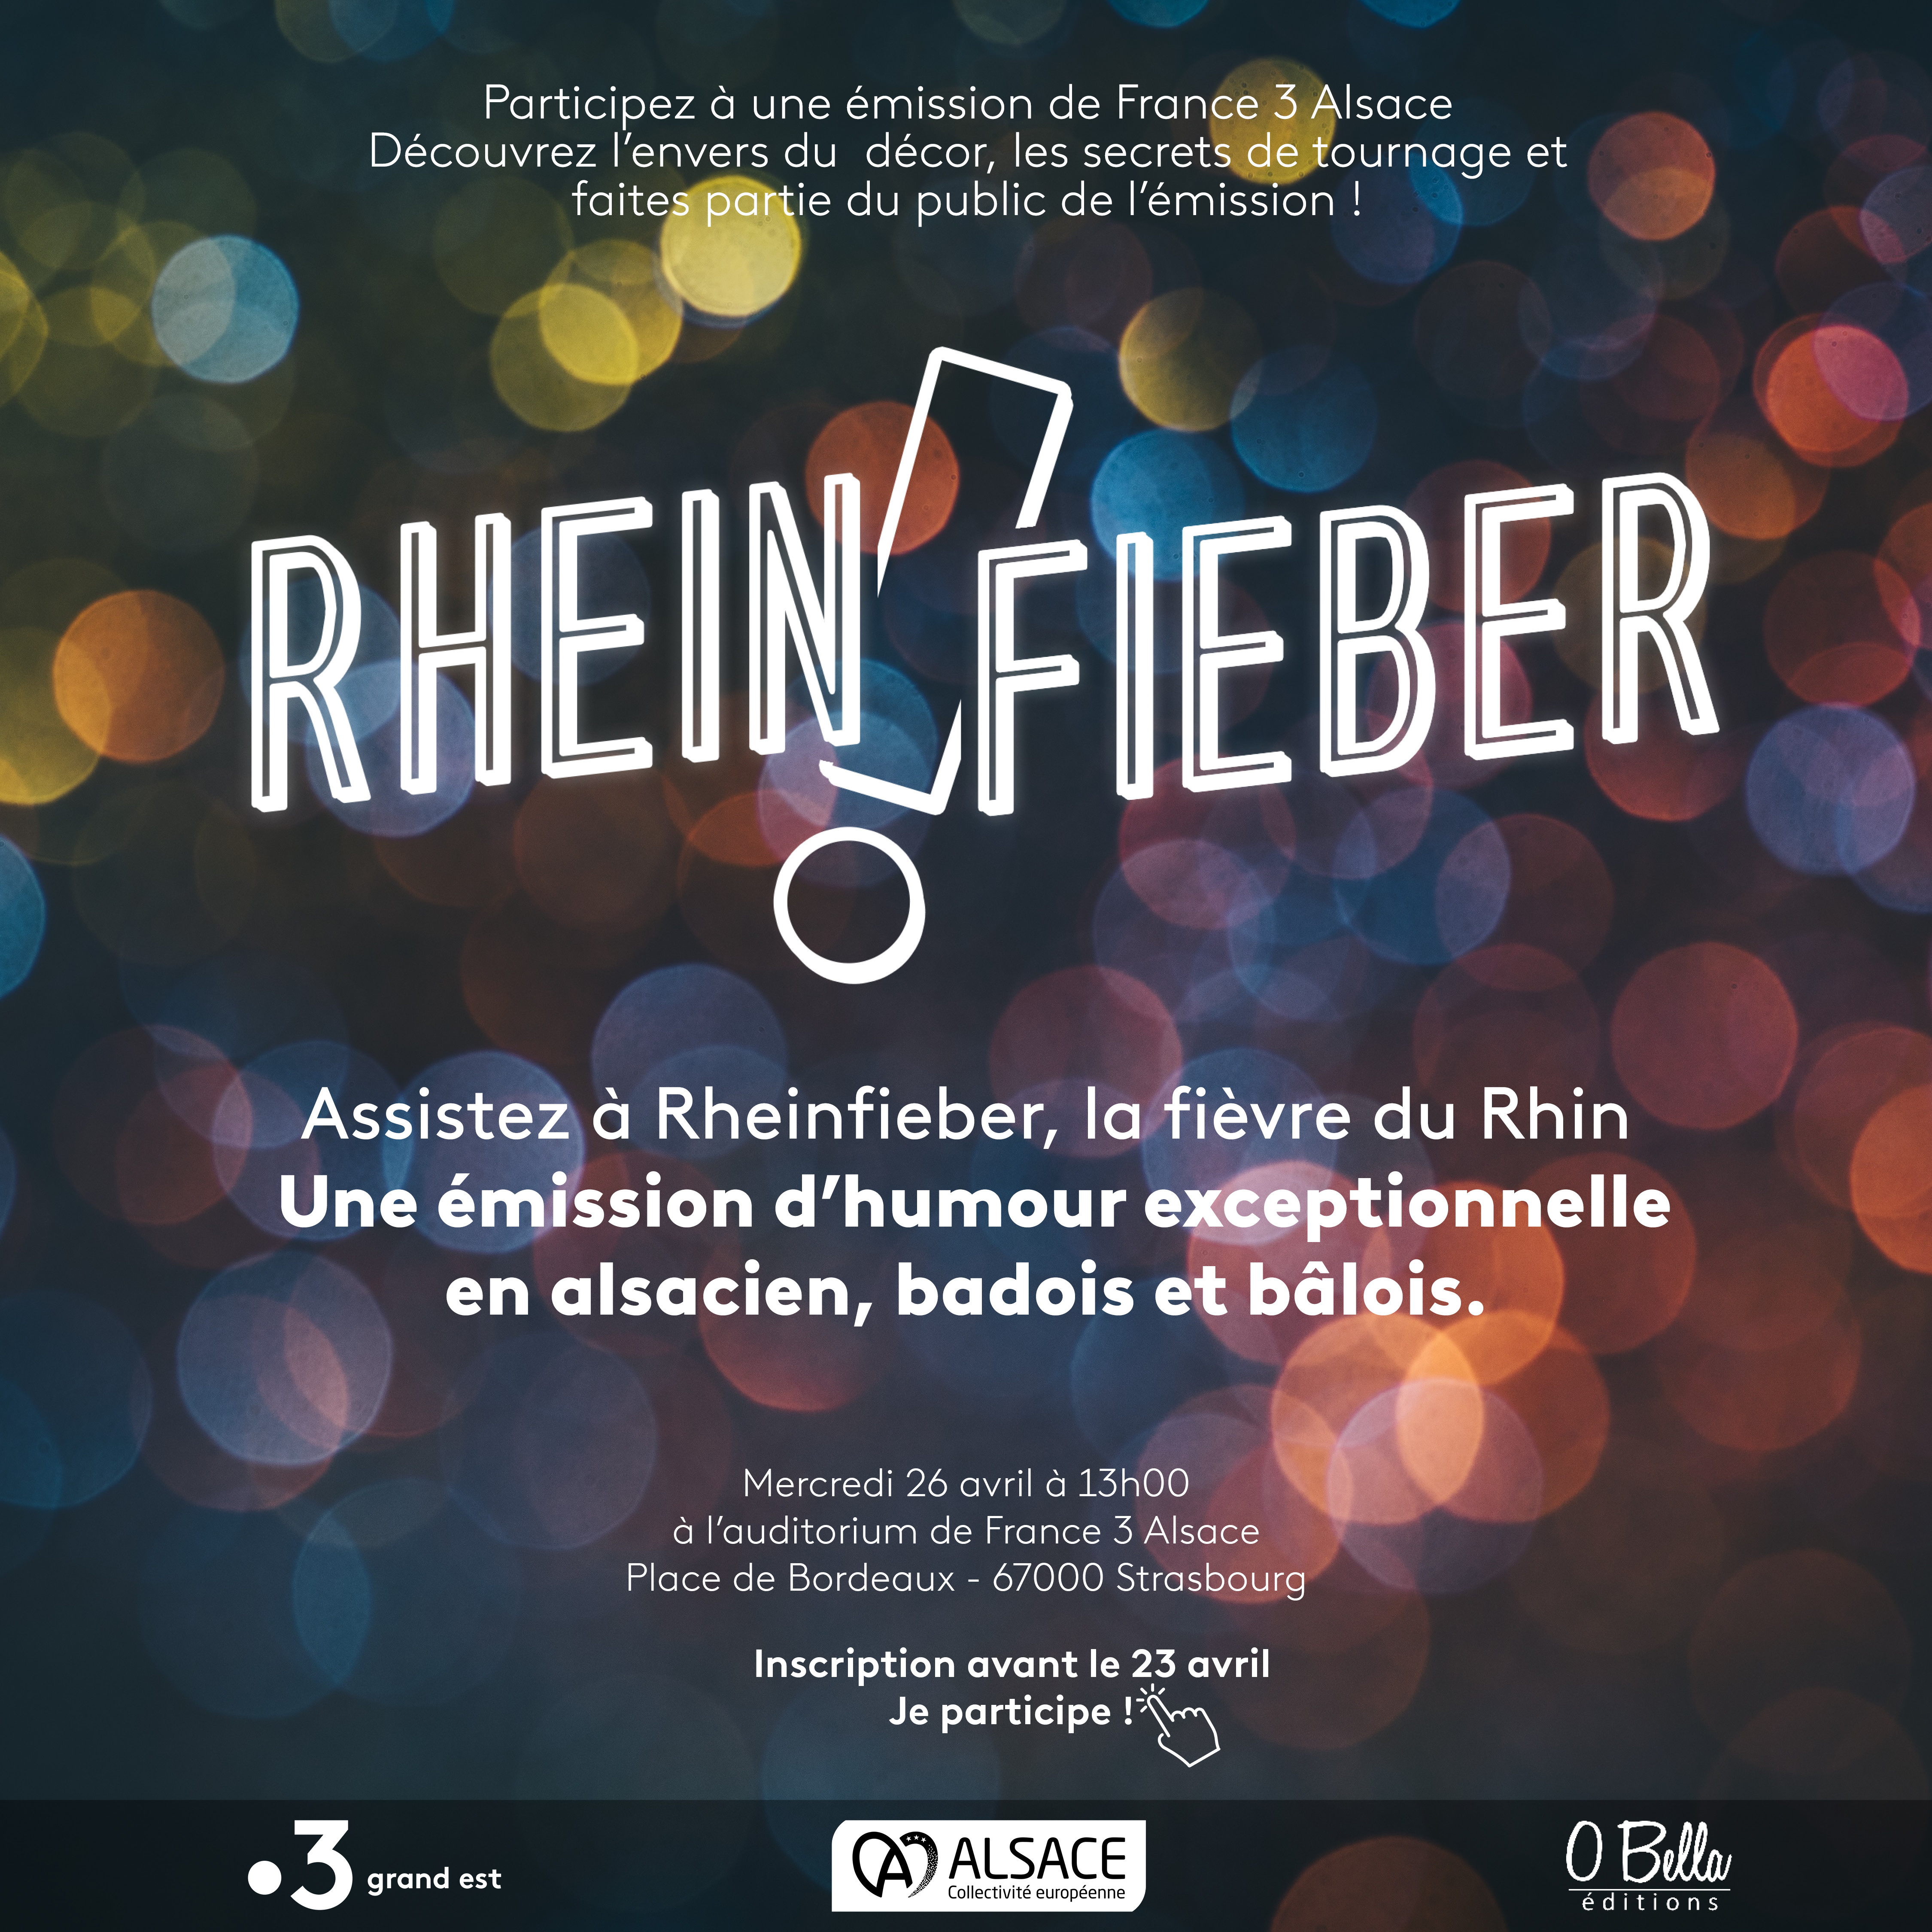 Incvitation au tournage de Rheinfieber, le 26 avril à 13h à l'auditorium de France 3 Alsace